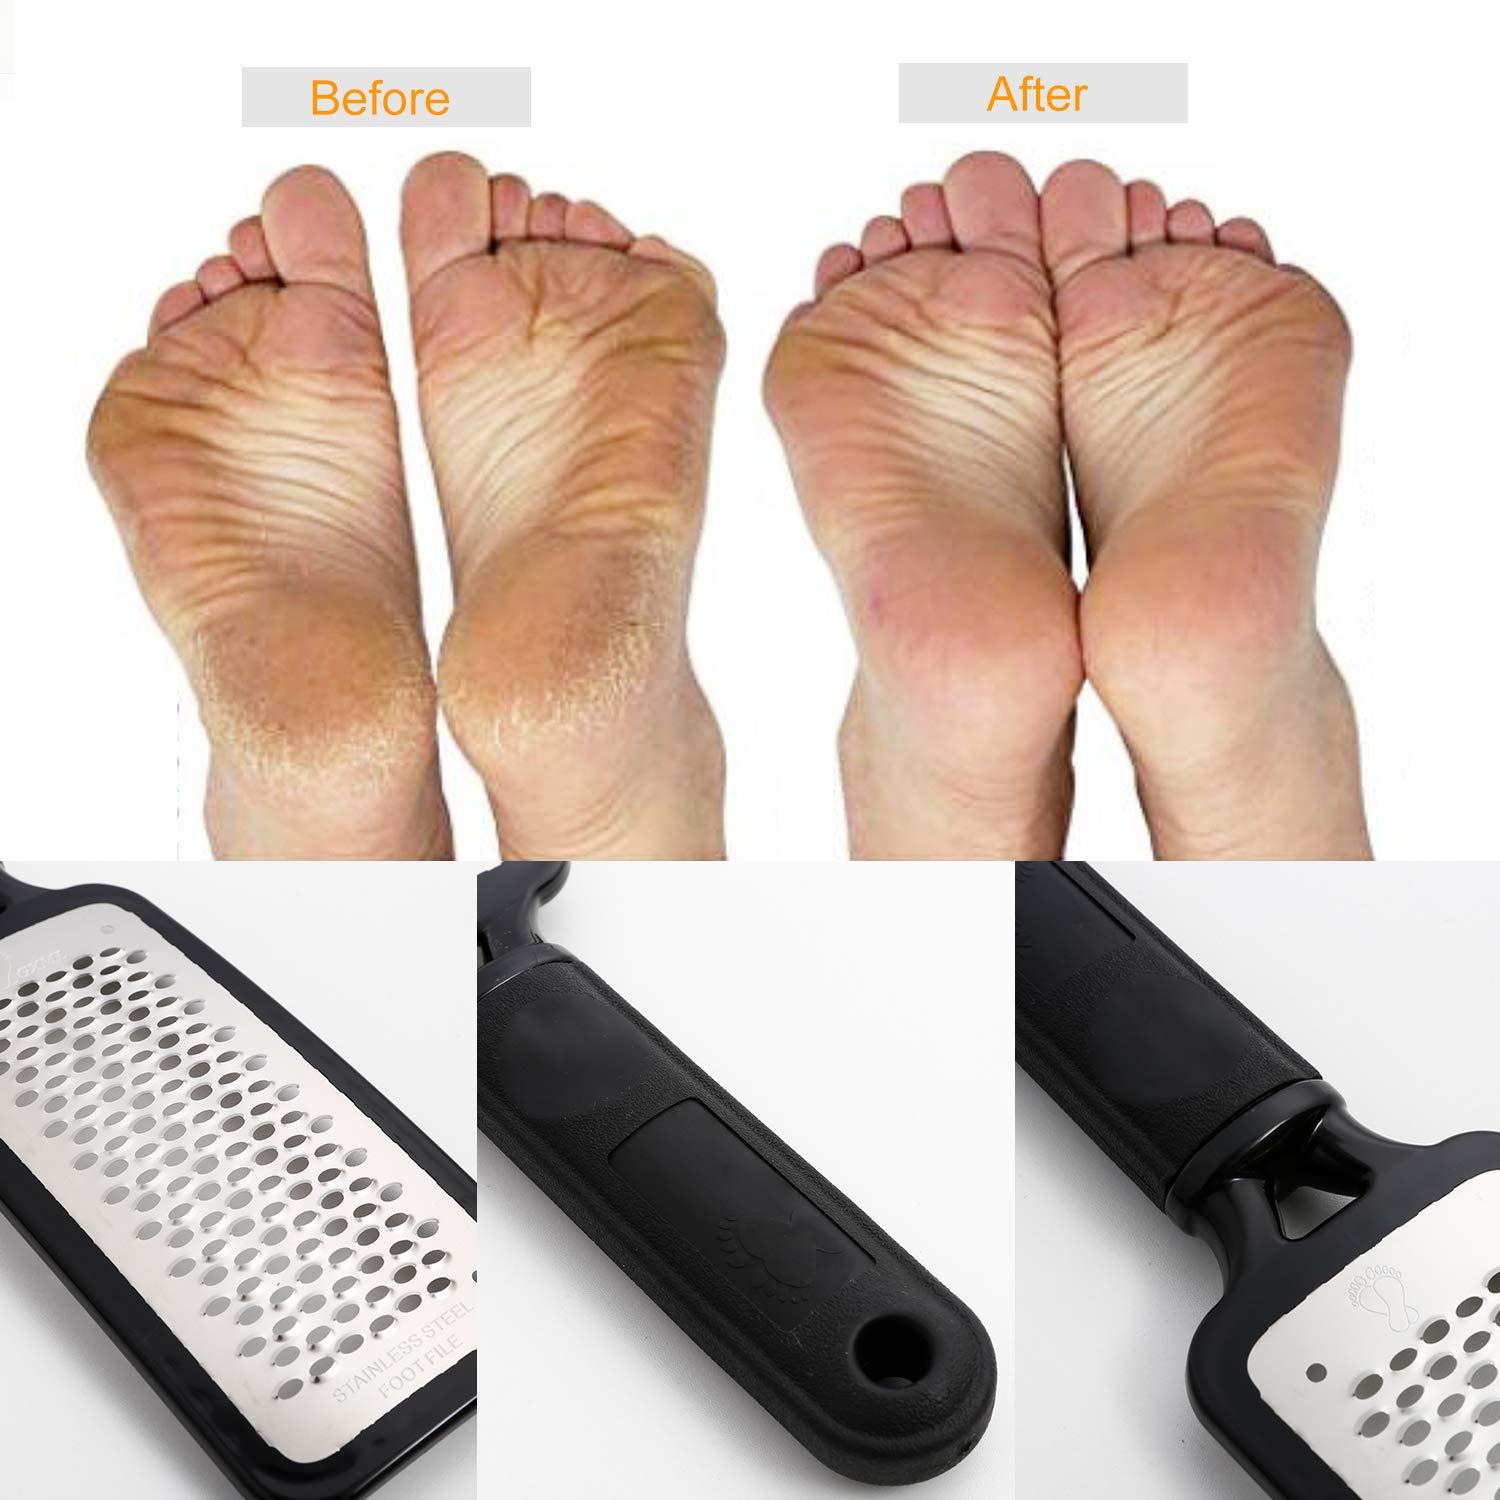 Professional Foot Scraper Set for Callus, Hard Skin Removal